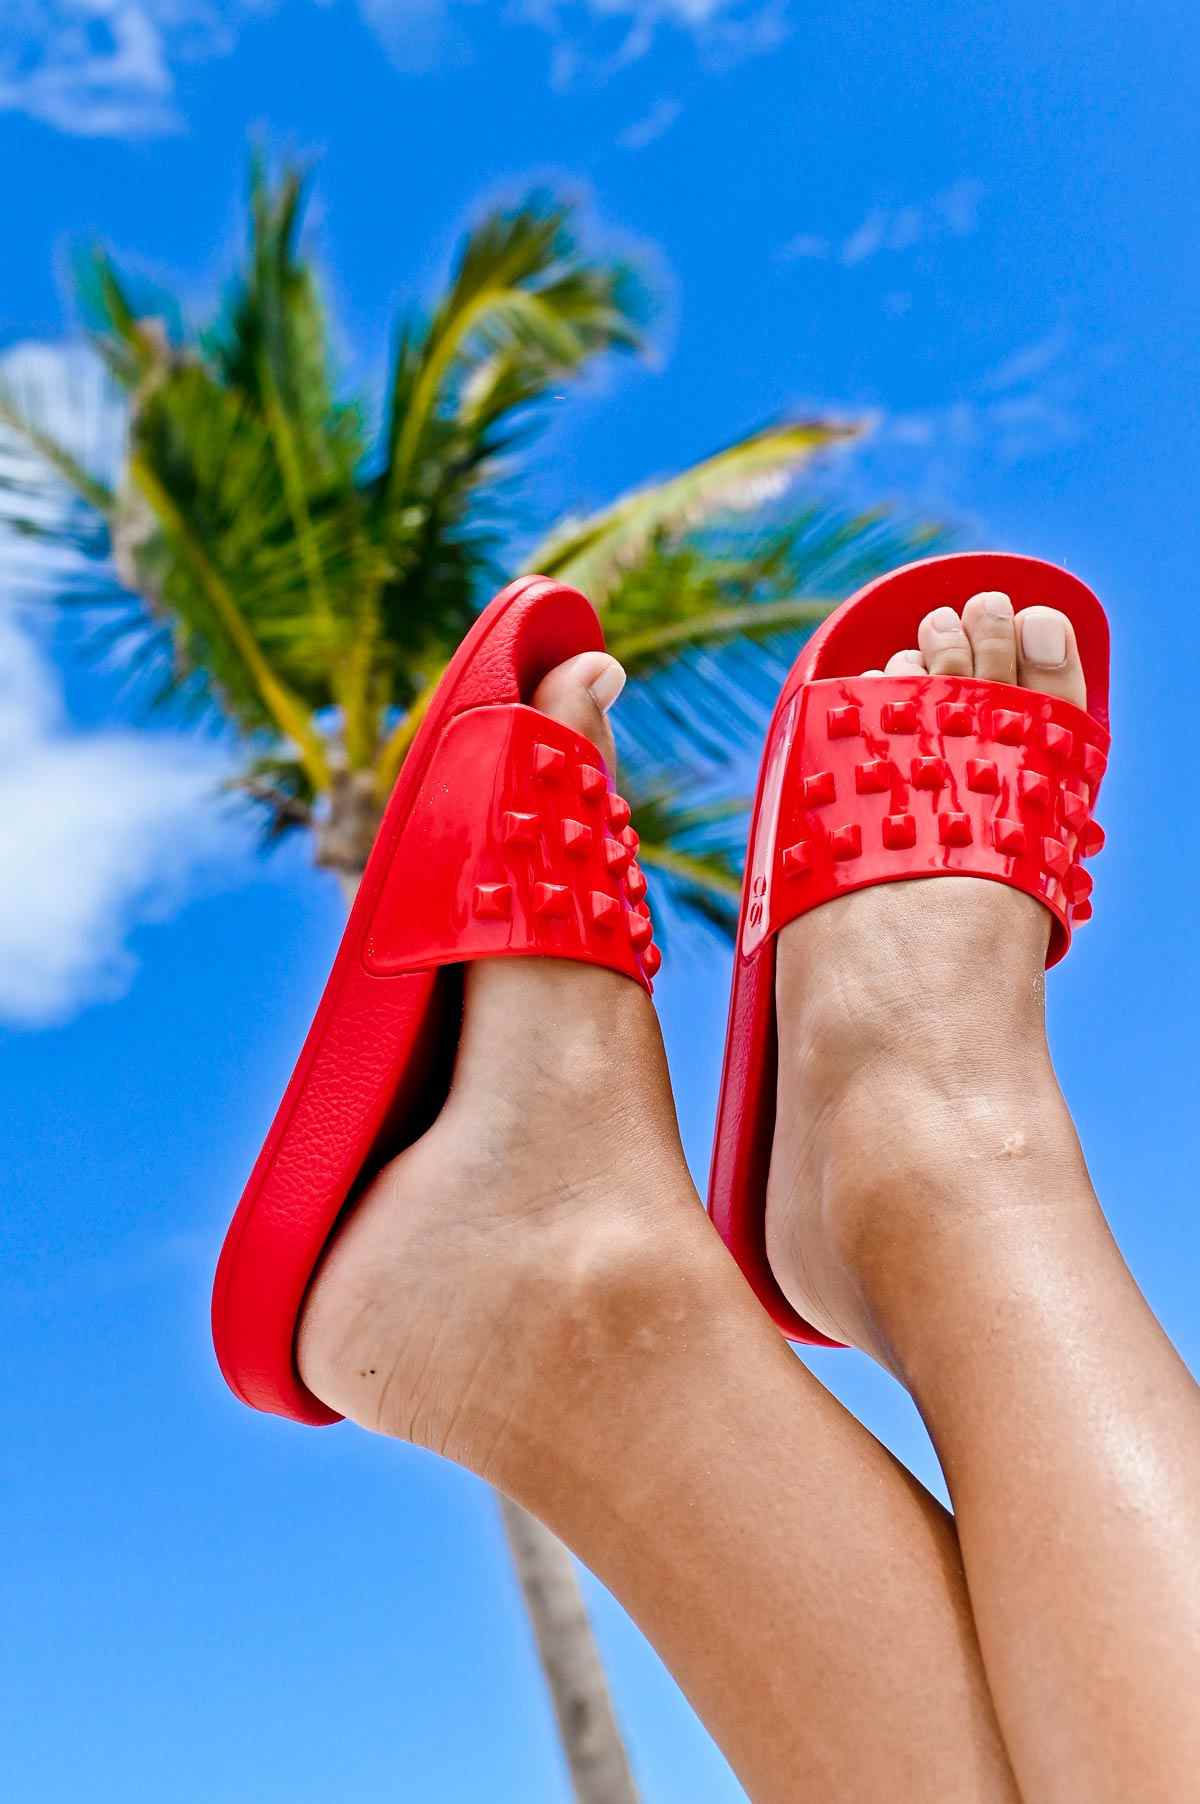 Buy Franco Red Jelly slides, Red Slides, summer flip-flop